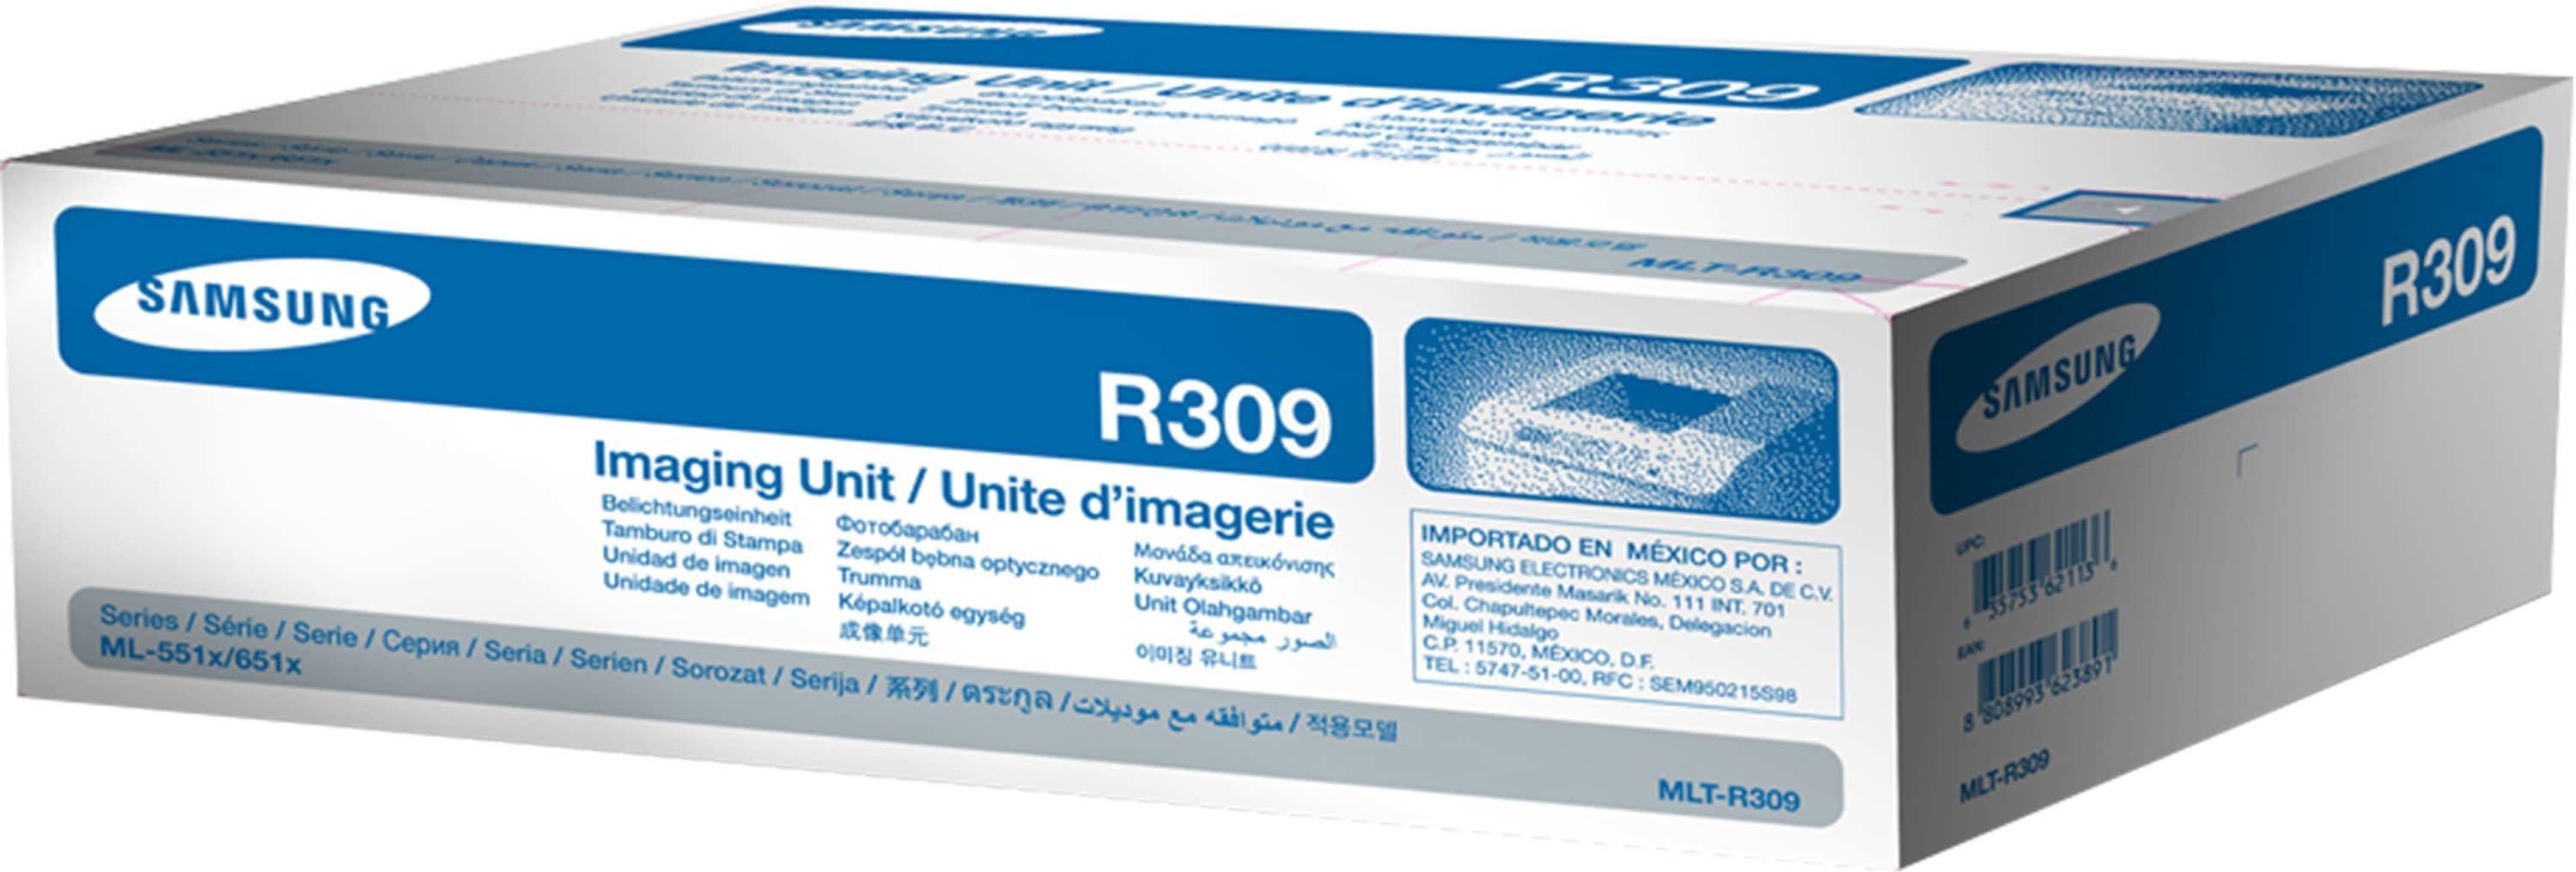 HP Toner/MLT-R309 Imaging Unit